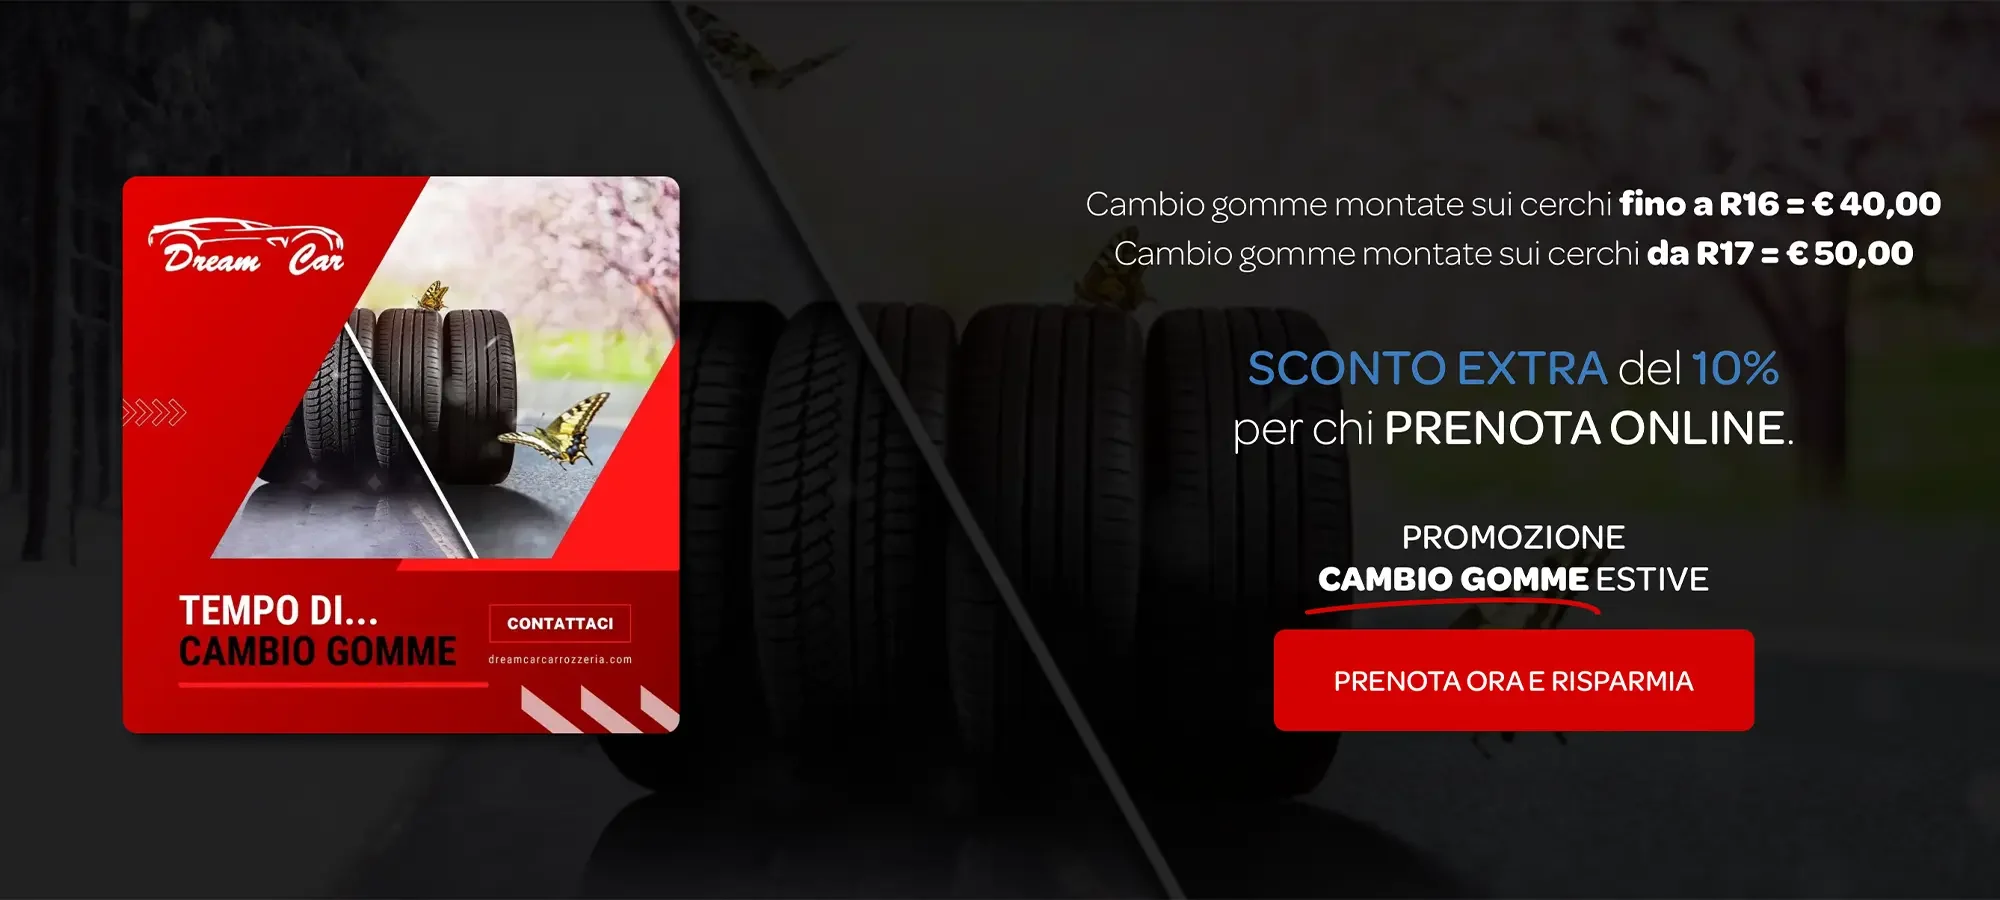 Servizio professionale di cambio gomme stagionale presso Carrozzeria DREAM CAR a Rivoli (TO) - Sconto extra del 10% per chi prenota online